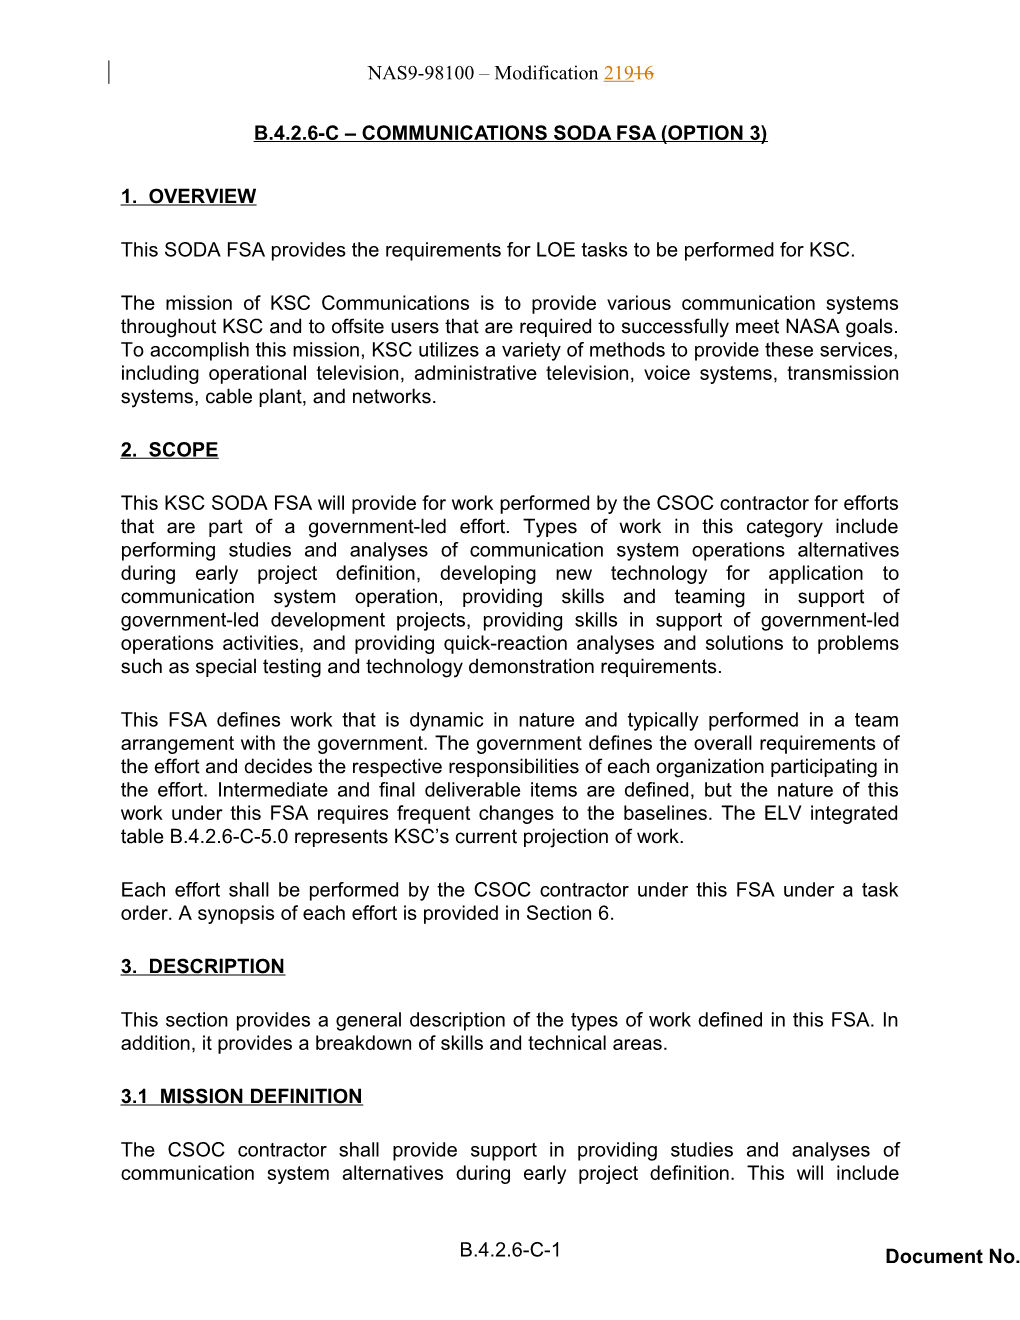 B.4.2.6-C Communications SODA FSA (Option 3)